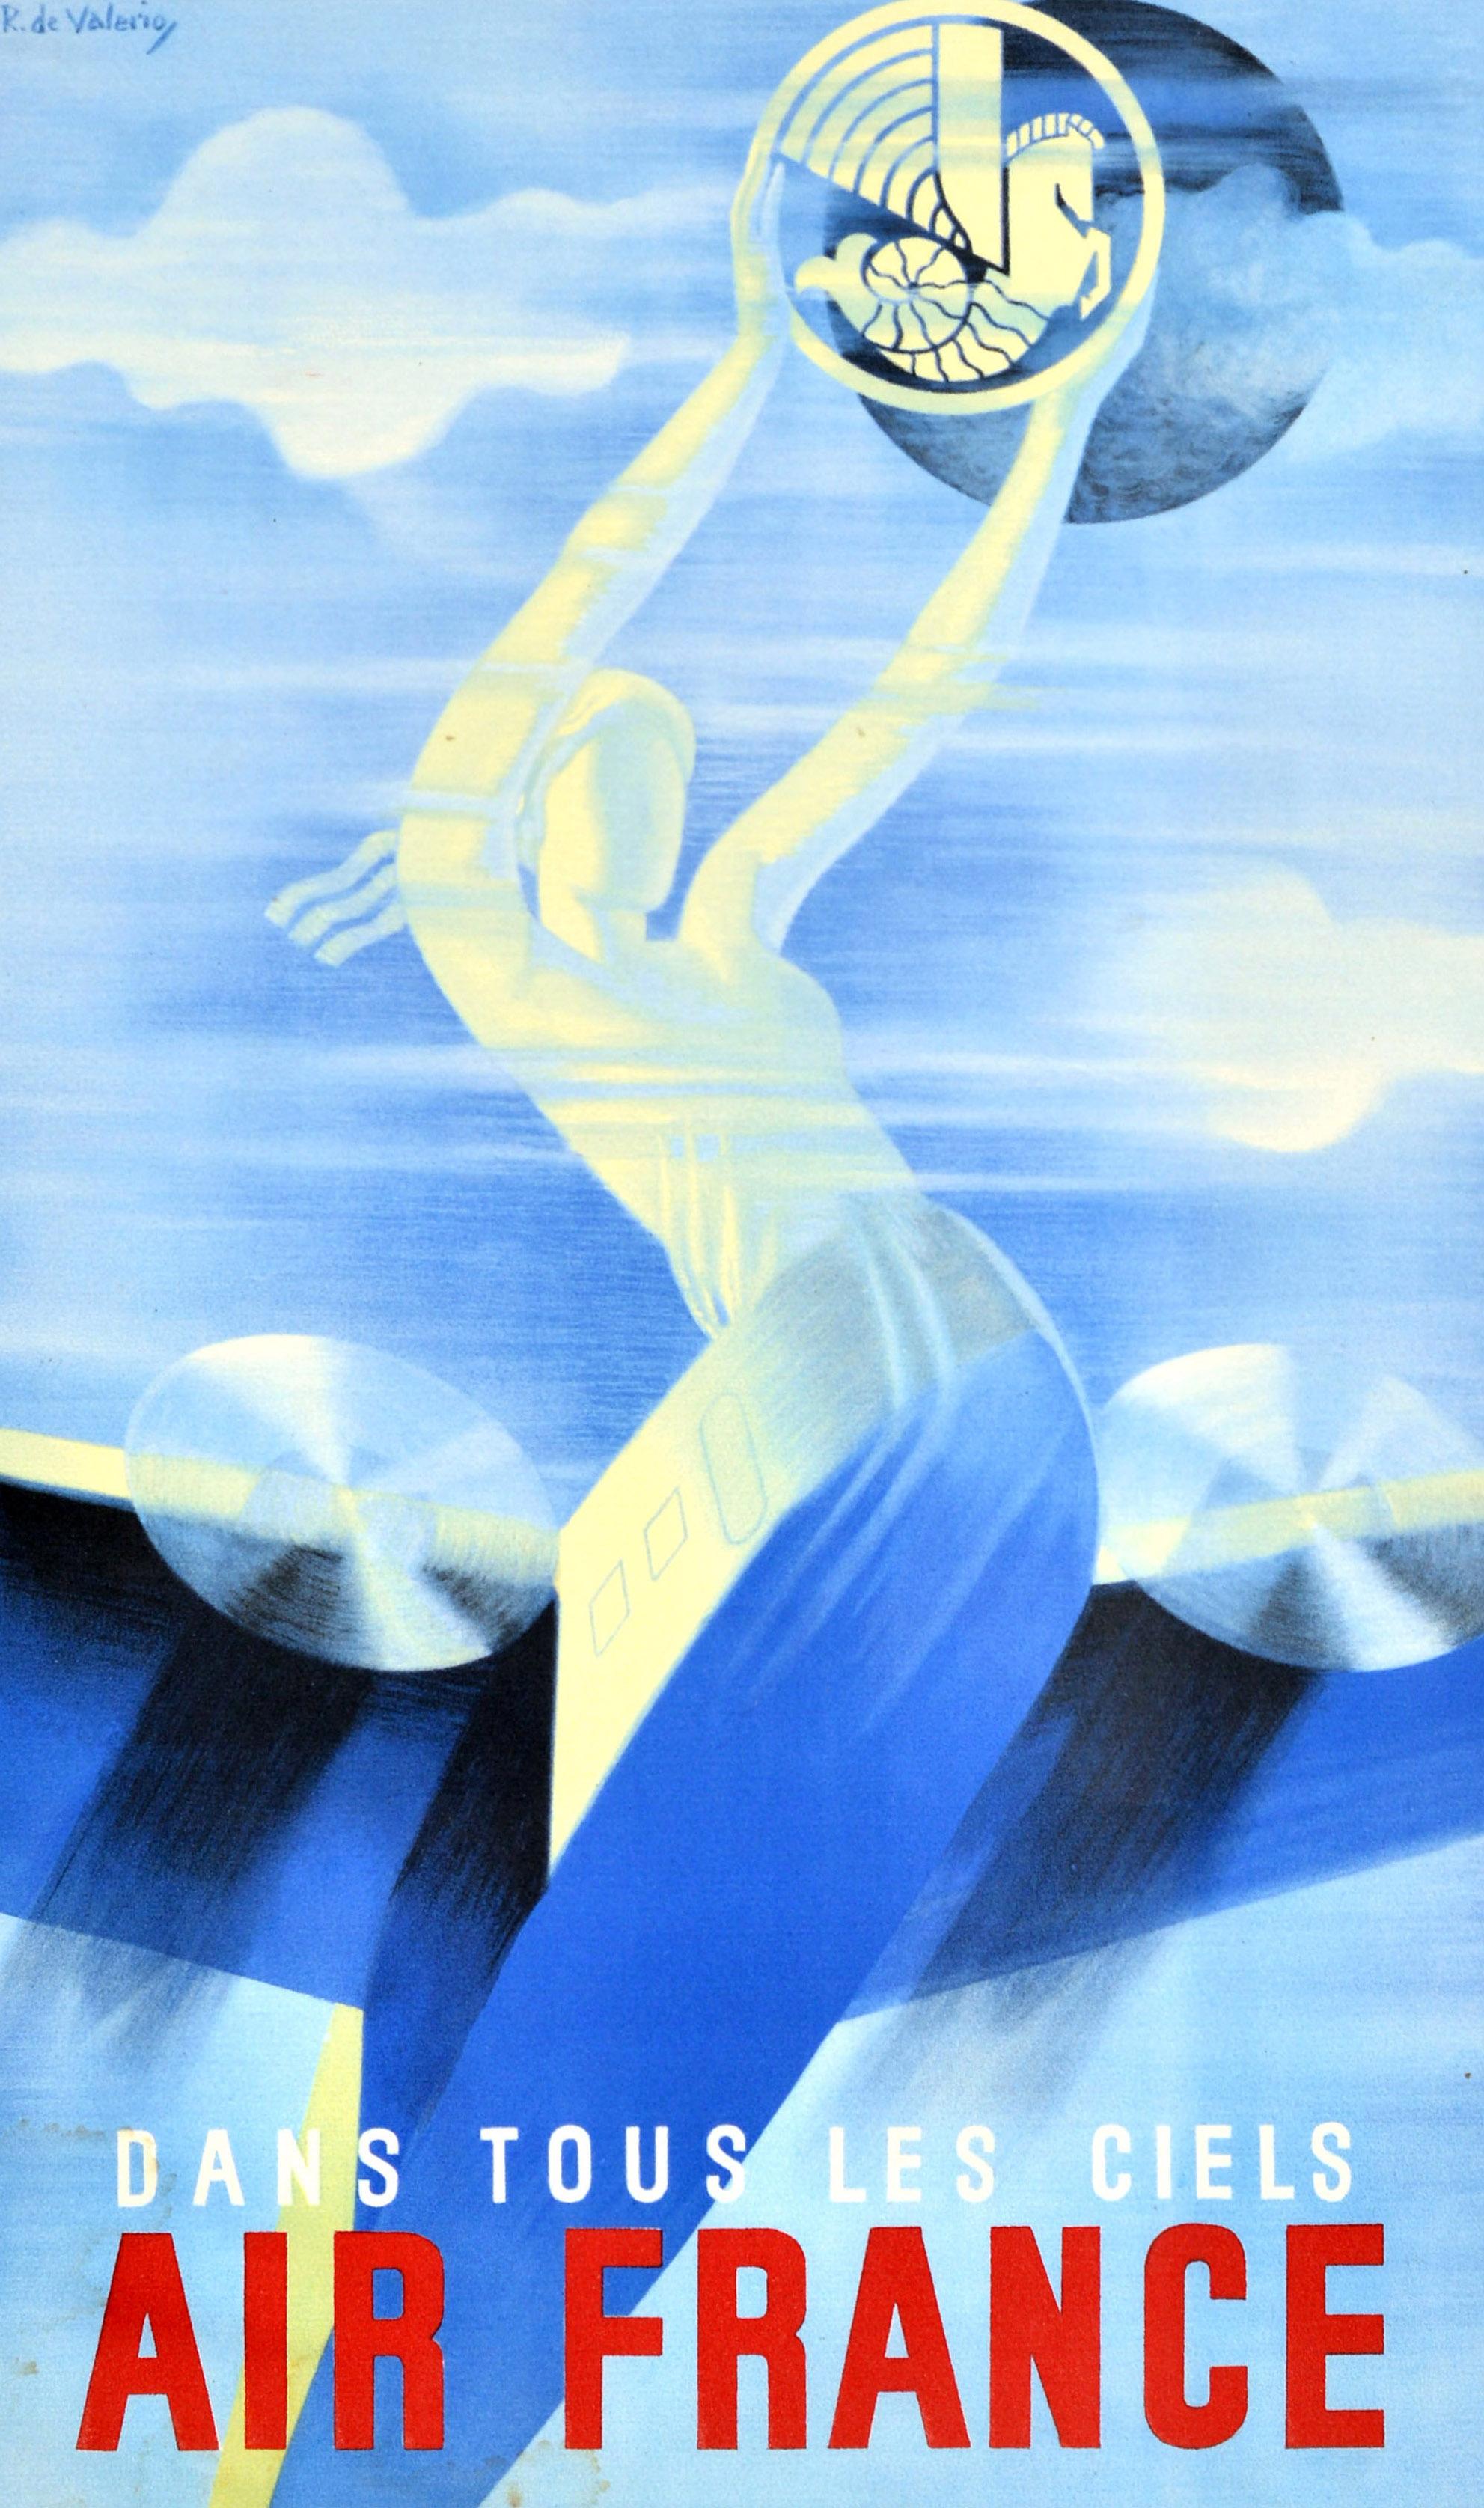 Affiche de voyage originale - Dans Tous Les Ciels Air France / In All Skies - présentant un superbe dessin Art Déco de Roger de Valerio (1886-1951) représentant un avion à hélice volant à grande vitesse avec une dame à l'avant, telle une figure de